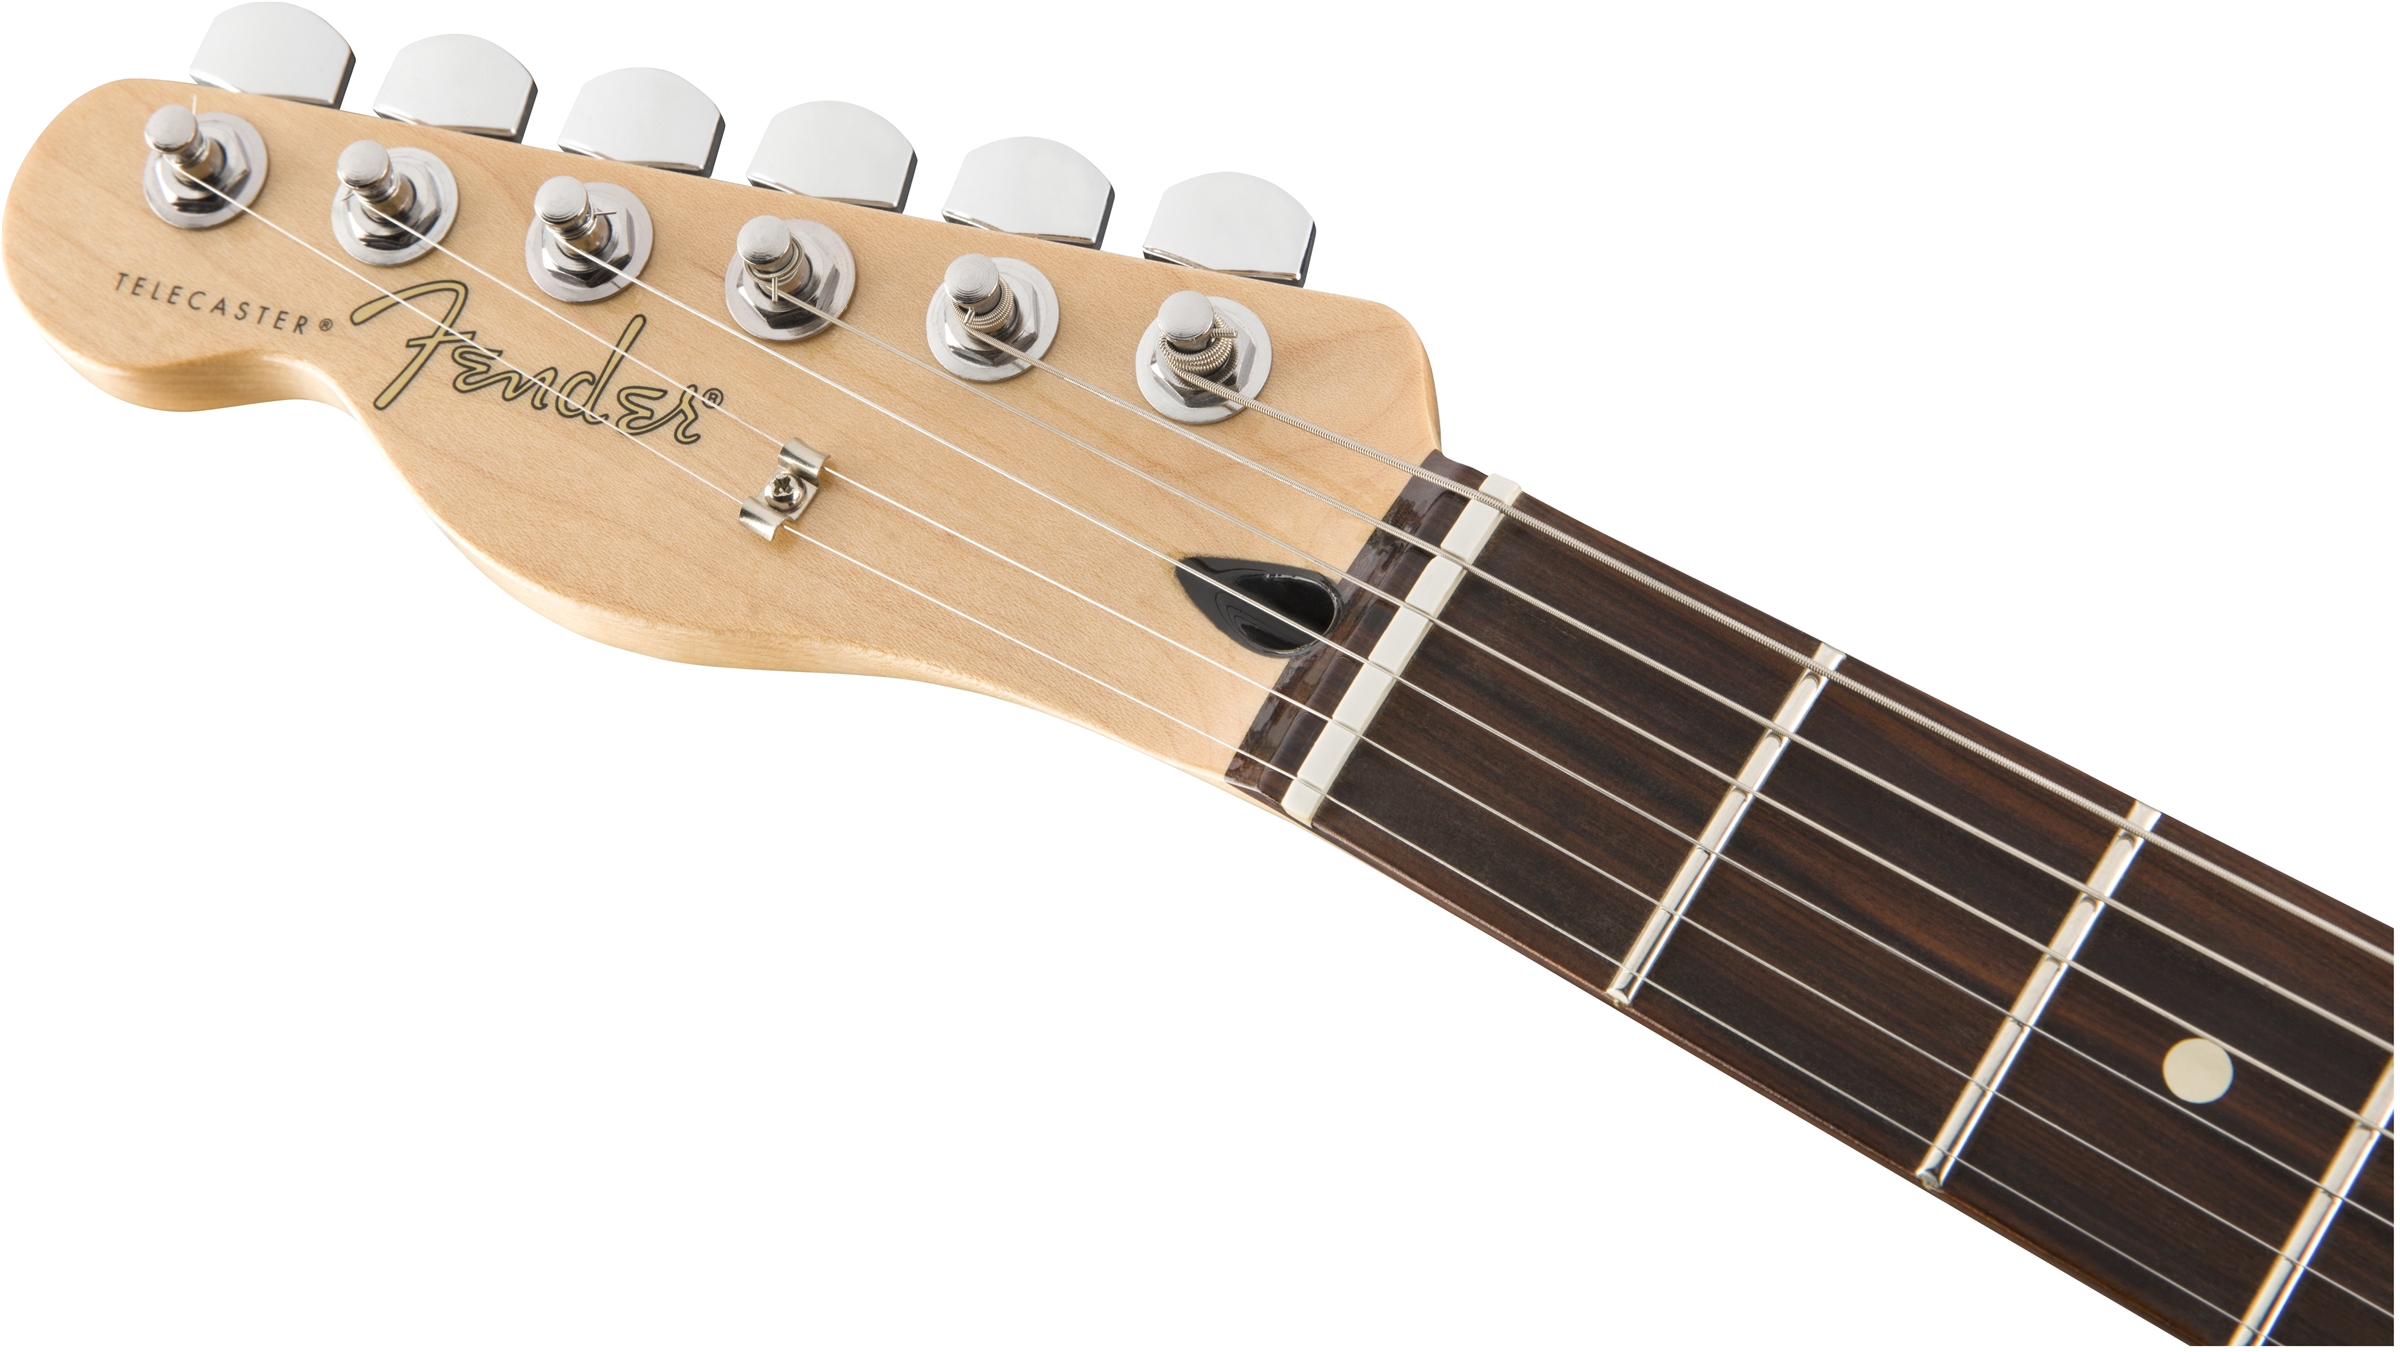 Fender Tele Player Lh Gaucher Mex Ss Pf - Polar White - Guitarra electrica para zurdos - Variation 4